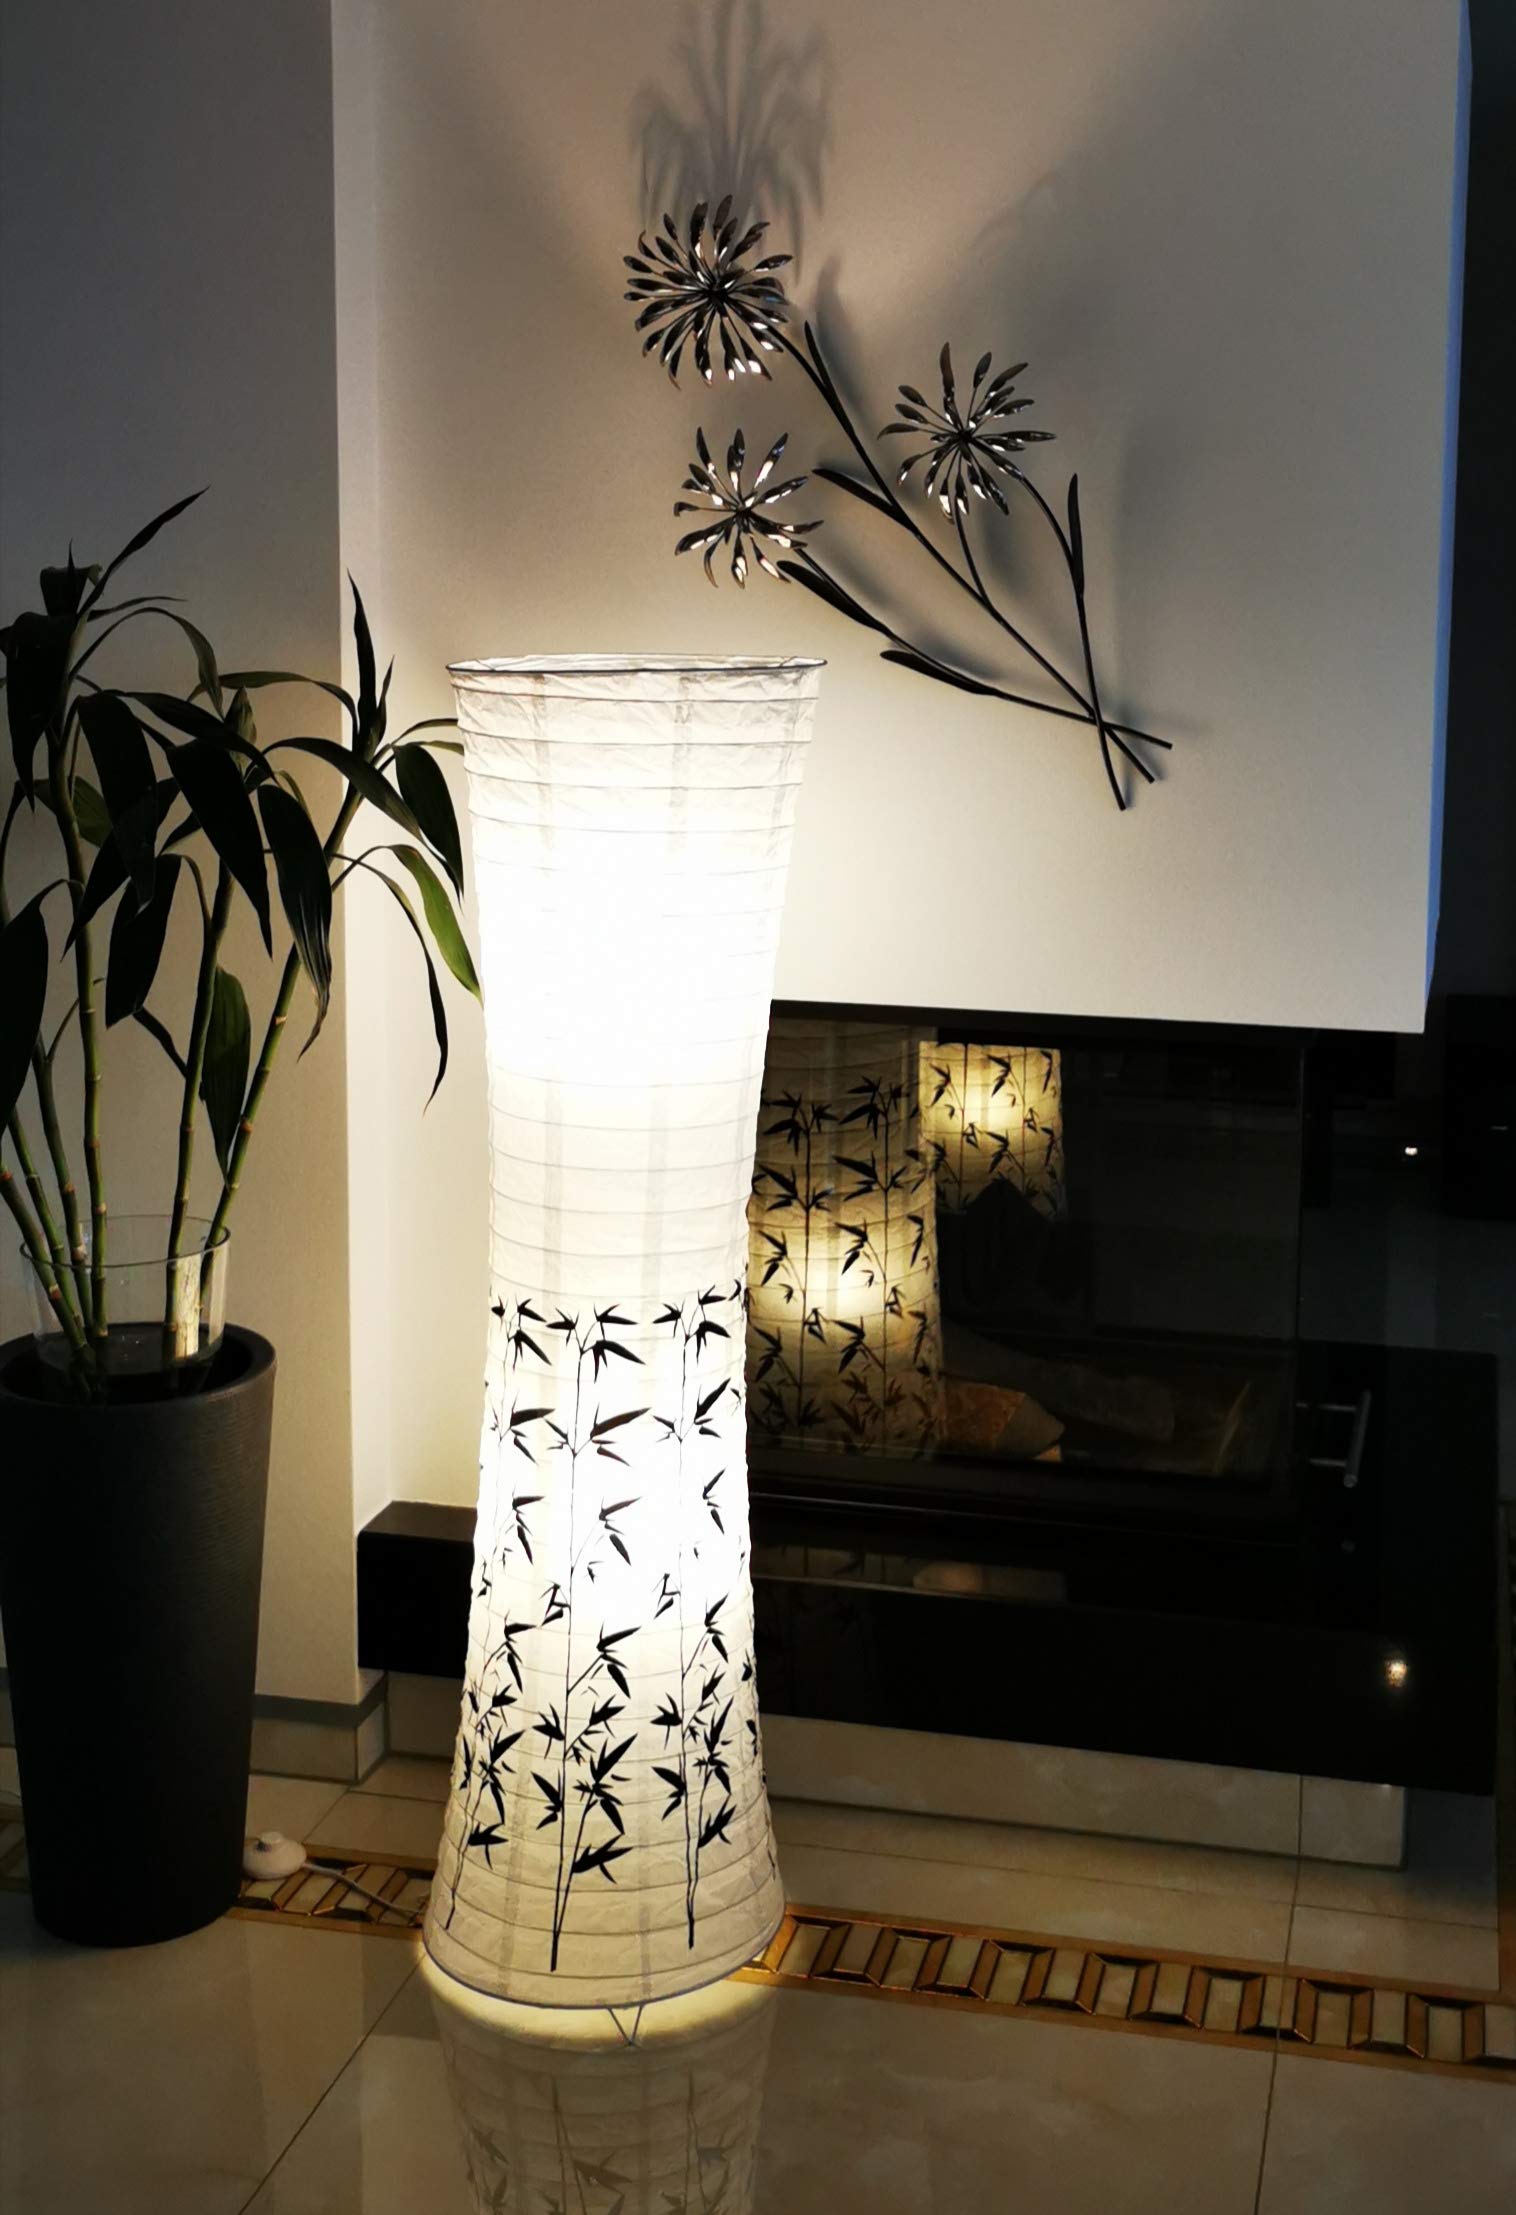 Trango 1217 Design Stehlampe Reispapier Lampe mit Bambus Motiv Dekor *PEKING* Stehleuchte 125cm Hoch, Wohnzimmer Deko Lampe, Stehlampe mit Lampenschirm inkl. 2x E14 Lampenfassung ohne Leuchtmittel